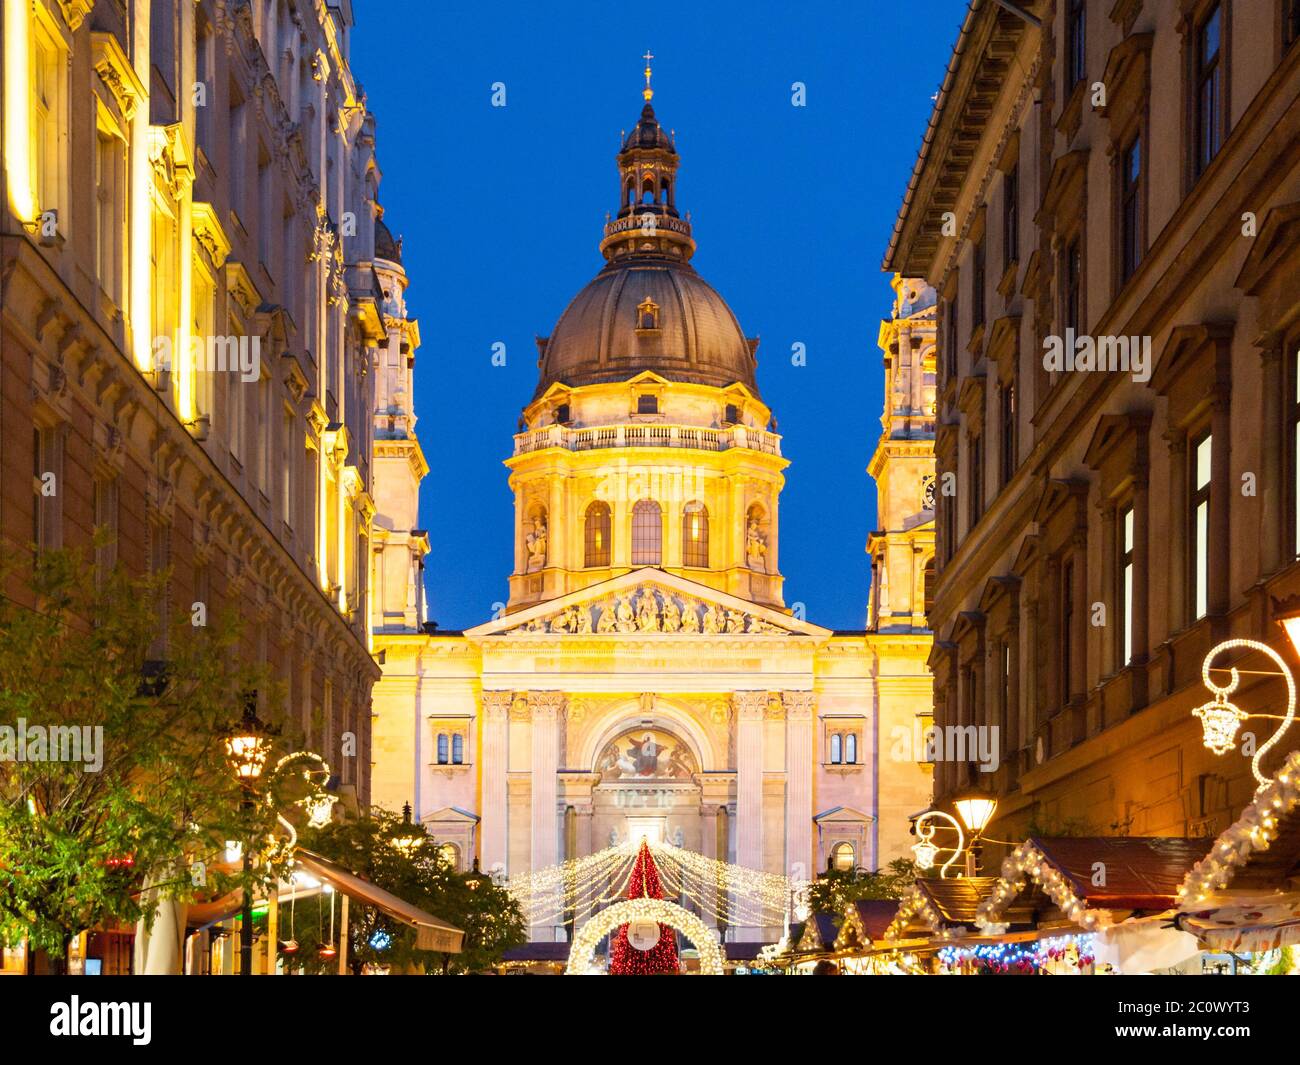 Weihnachten in Budapest. Beleuchtete Kuppel der St. Stephen's Basilika mit Urlaub Straßendekoration in Zrinyi Straße bei Nacht. UNESCO-Weltkulturerbe Budapest, Ungarn, Europa. Stockfoto